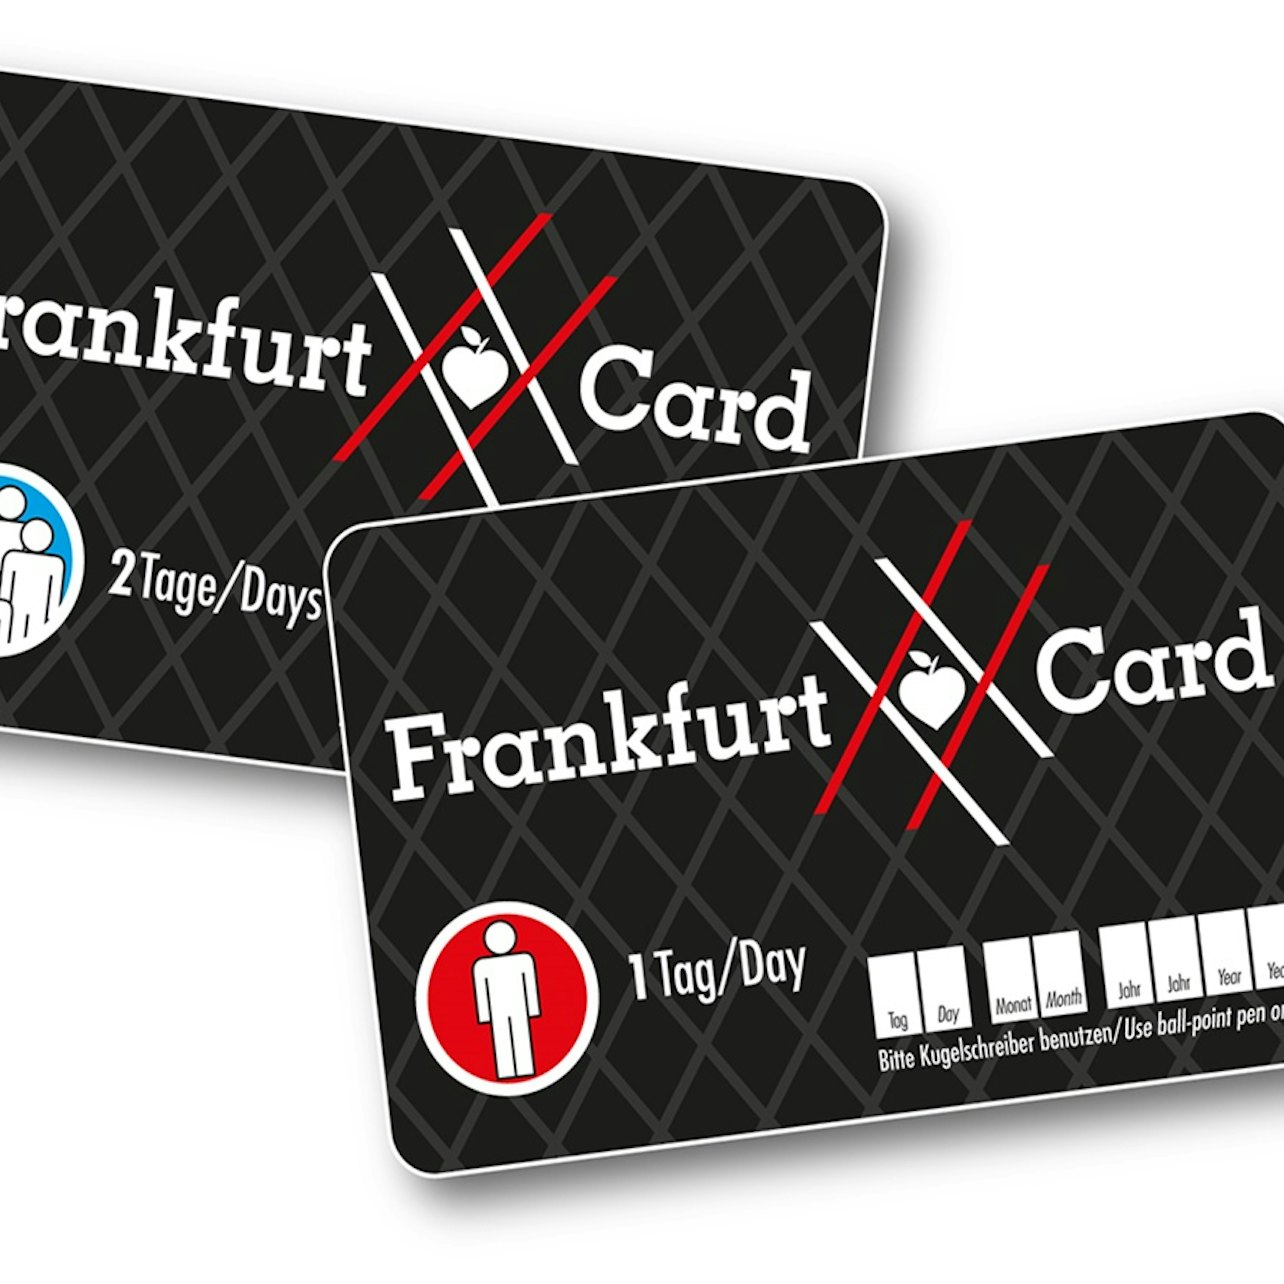 Frankfurt Card - Accommodations in Frankfurt